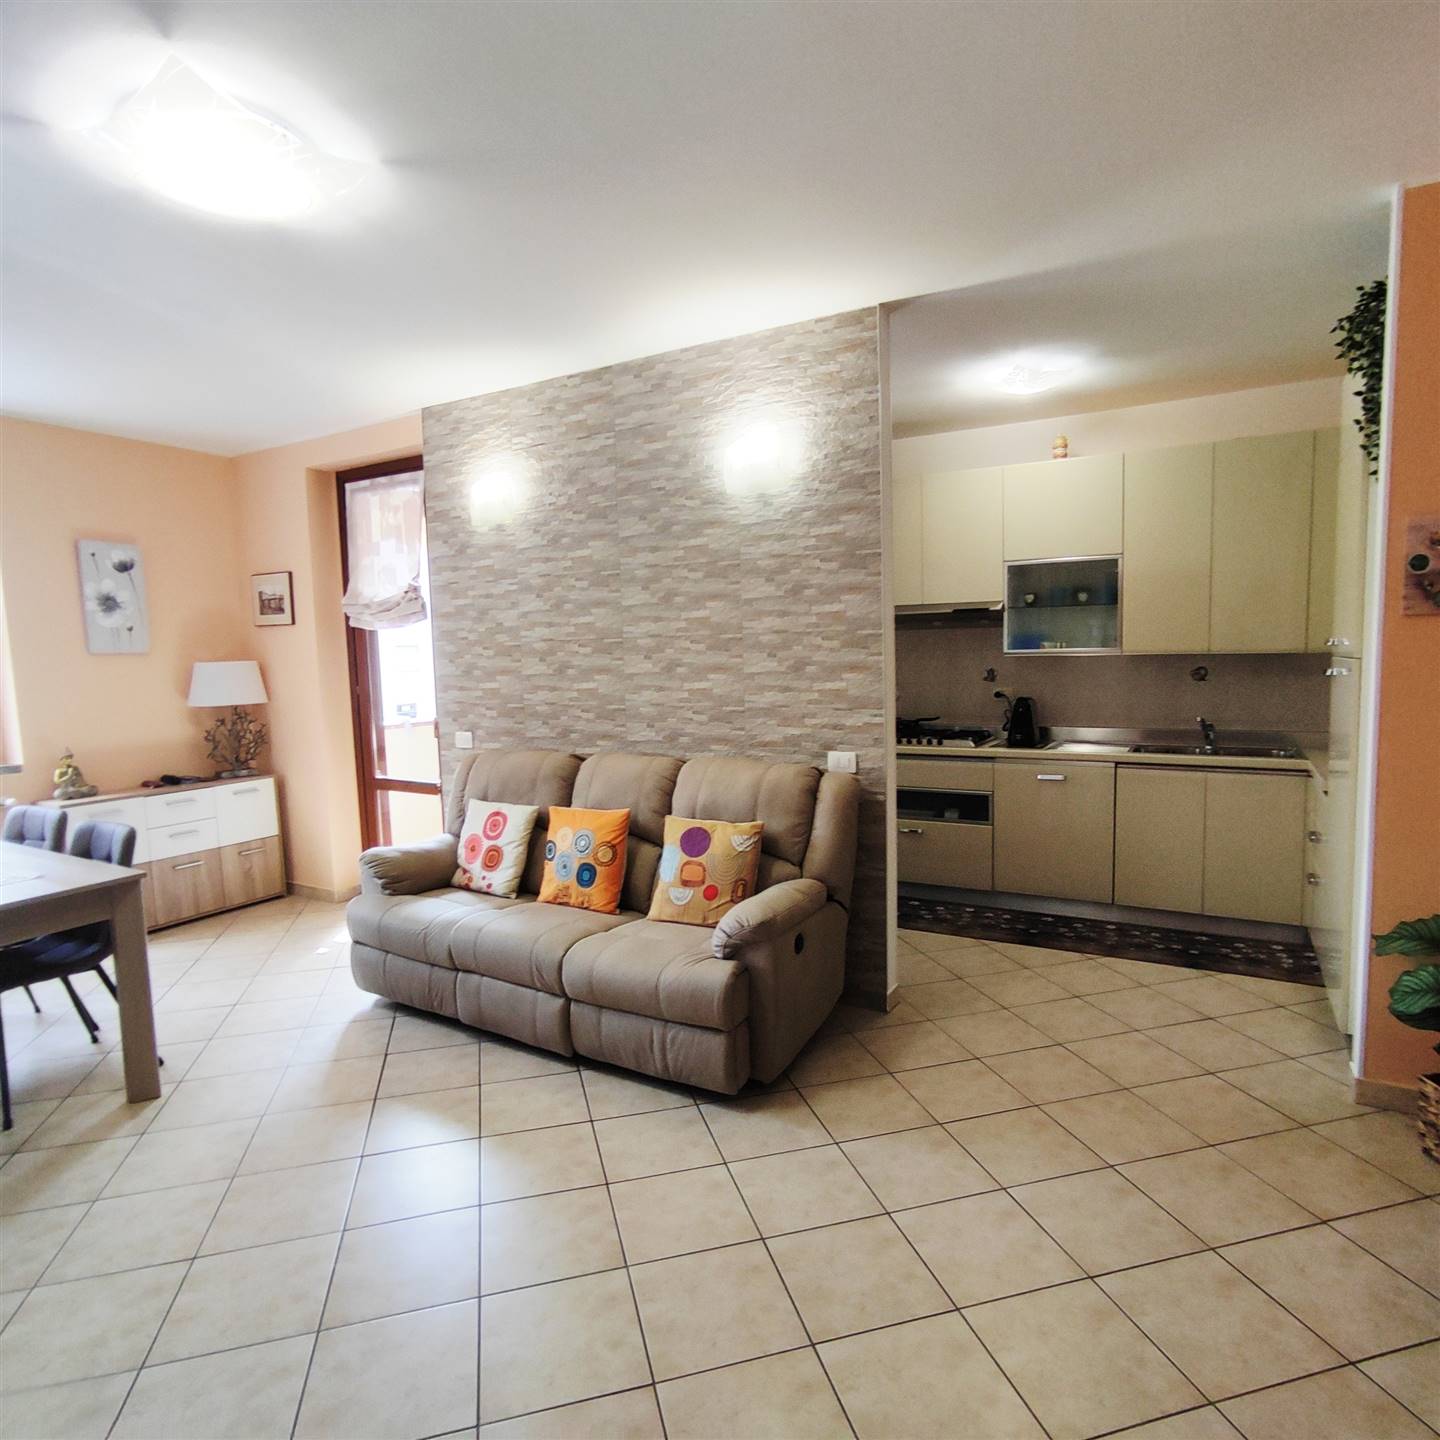 Appartamento in vendita a Vicchio, 3 locali, zona Località: PAESE, prezzo € 175.000 | PortaleAgenzieImmobiliari.it